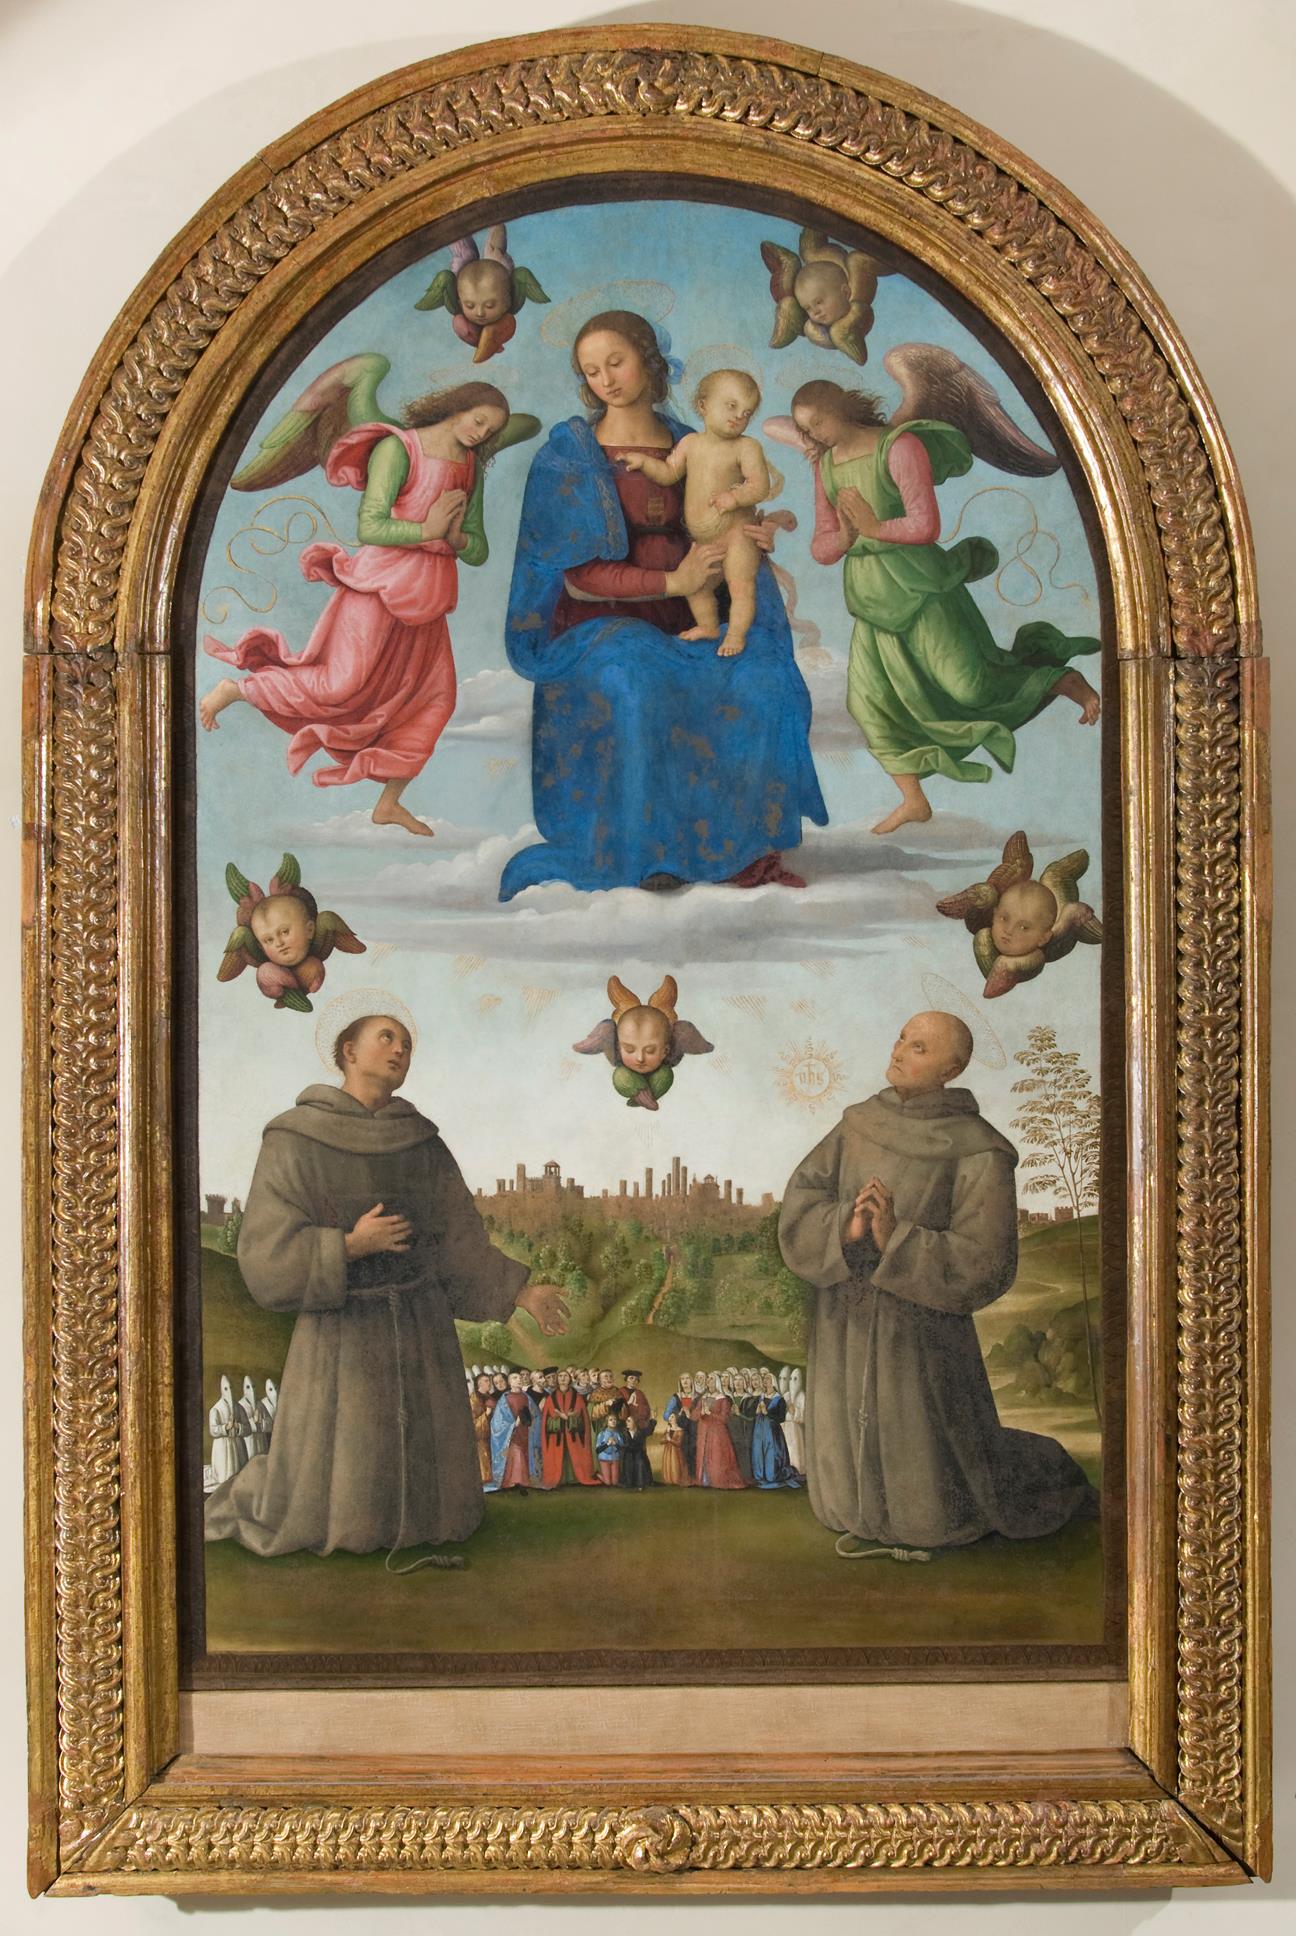 Perugino, Banner of Justice (c. 1501; tempera and oil on canvas, 278 x 138 cm; Perugia, Galleria Nazionale dell'Umbria)